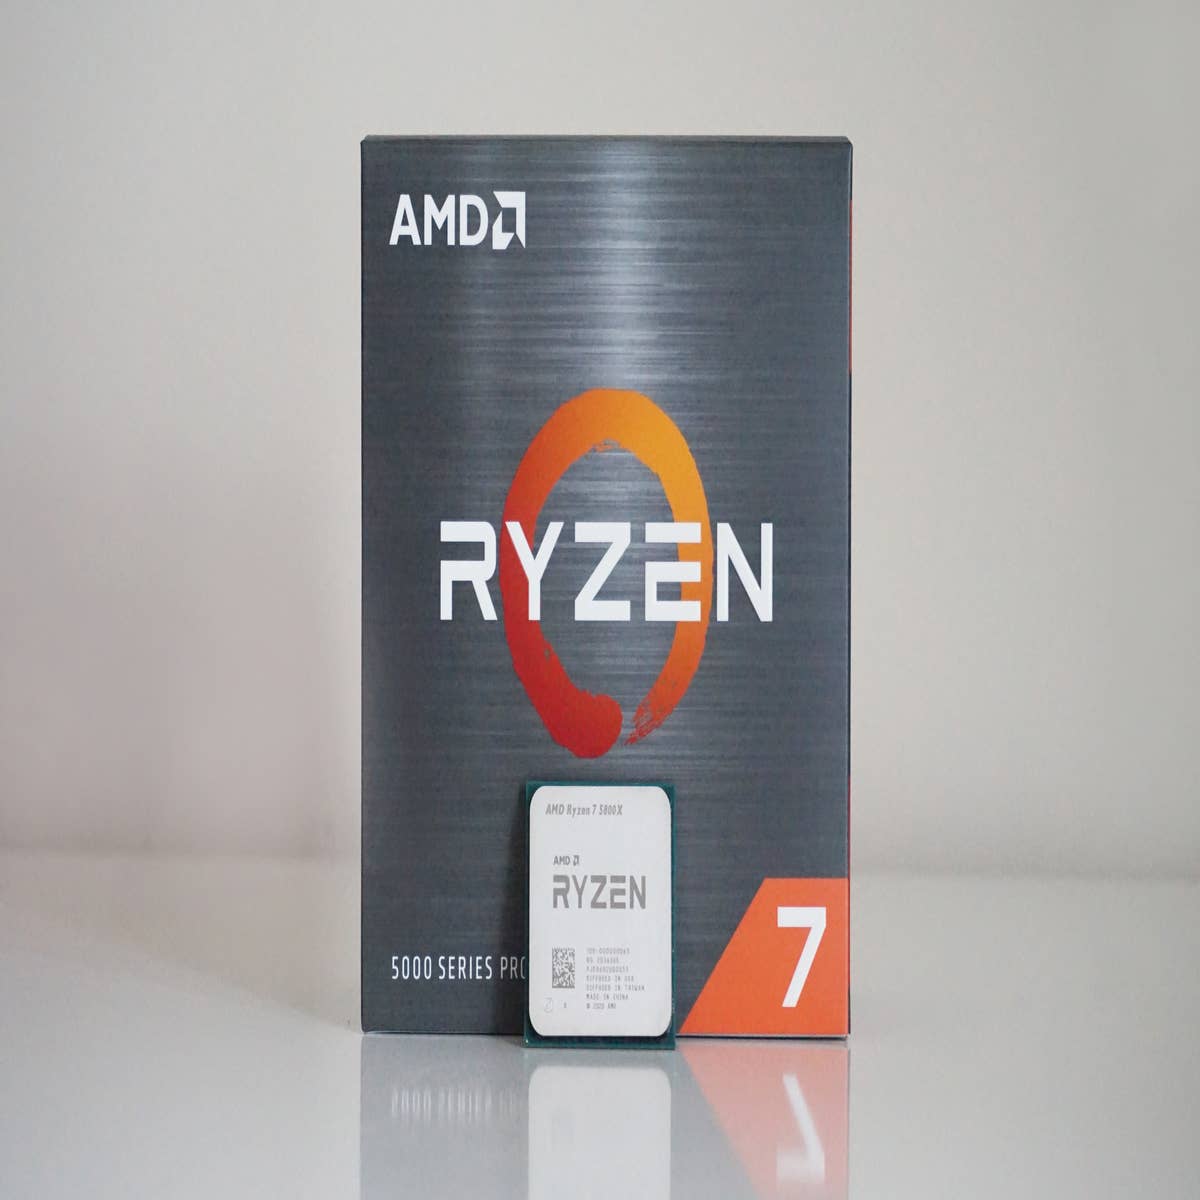 Ryzen 5 5600X and Ryzen 7 5700X - Best AM4 Upgrades?